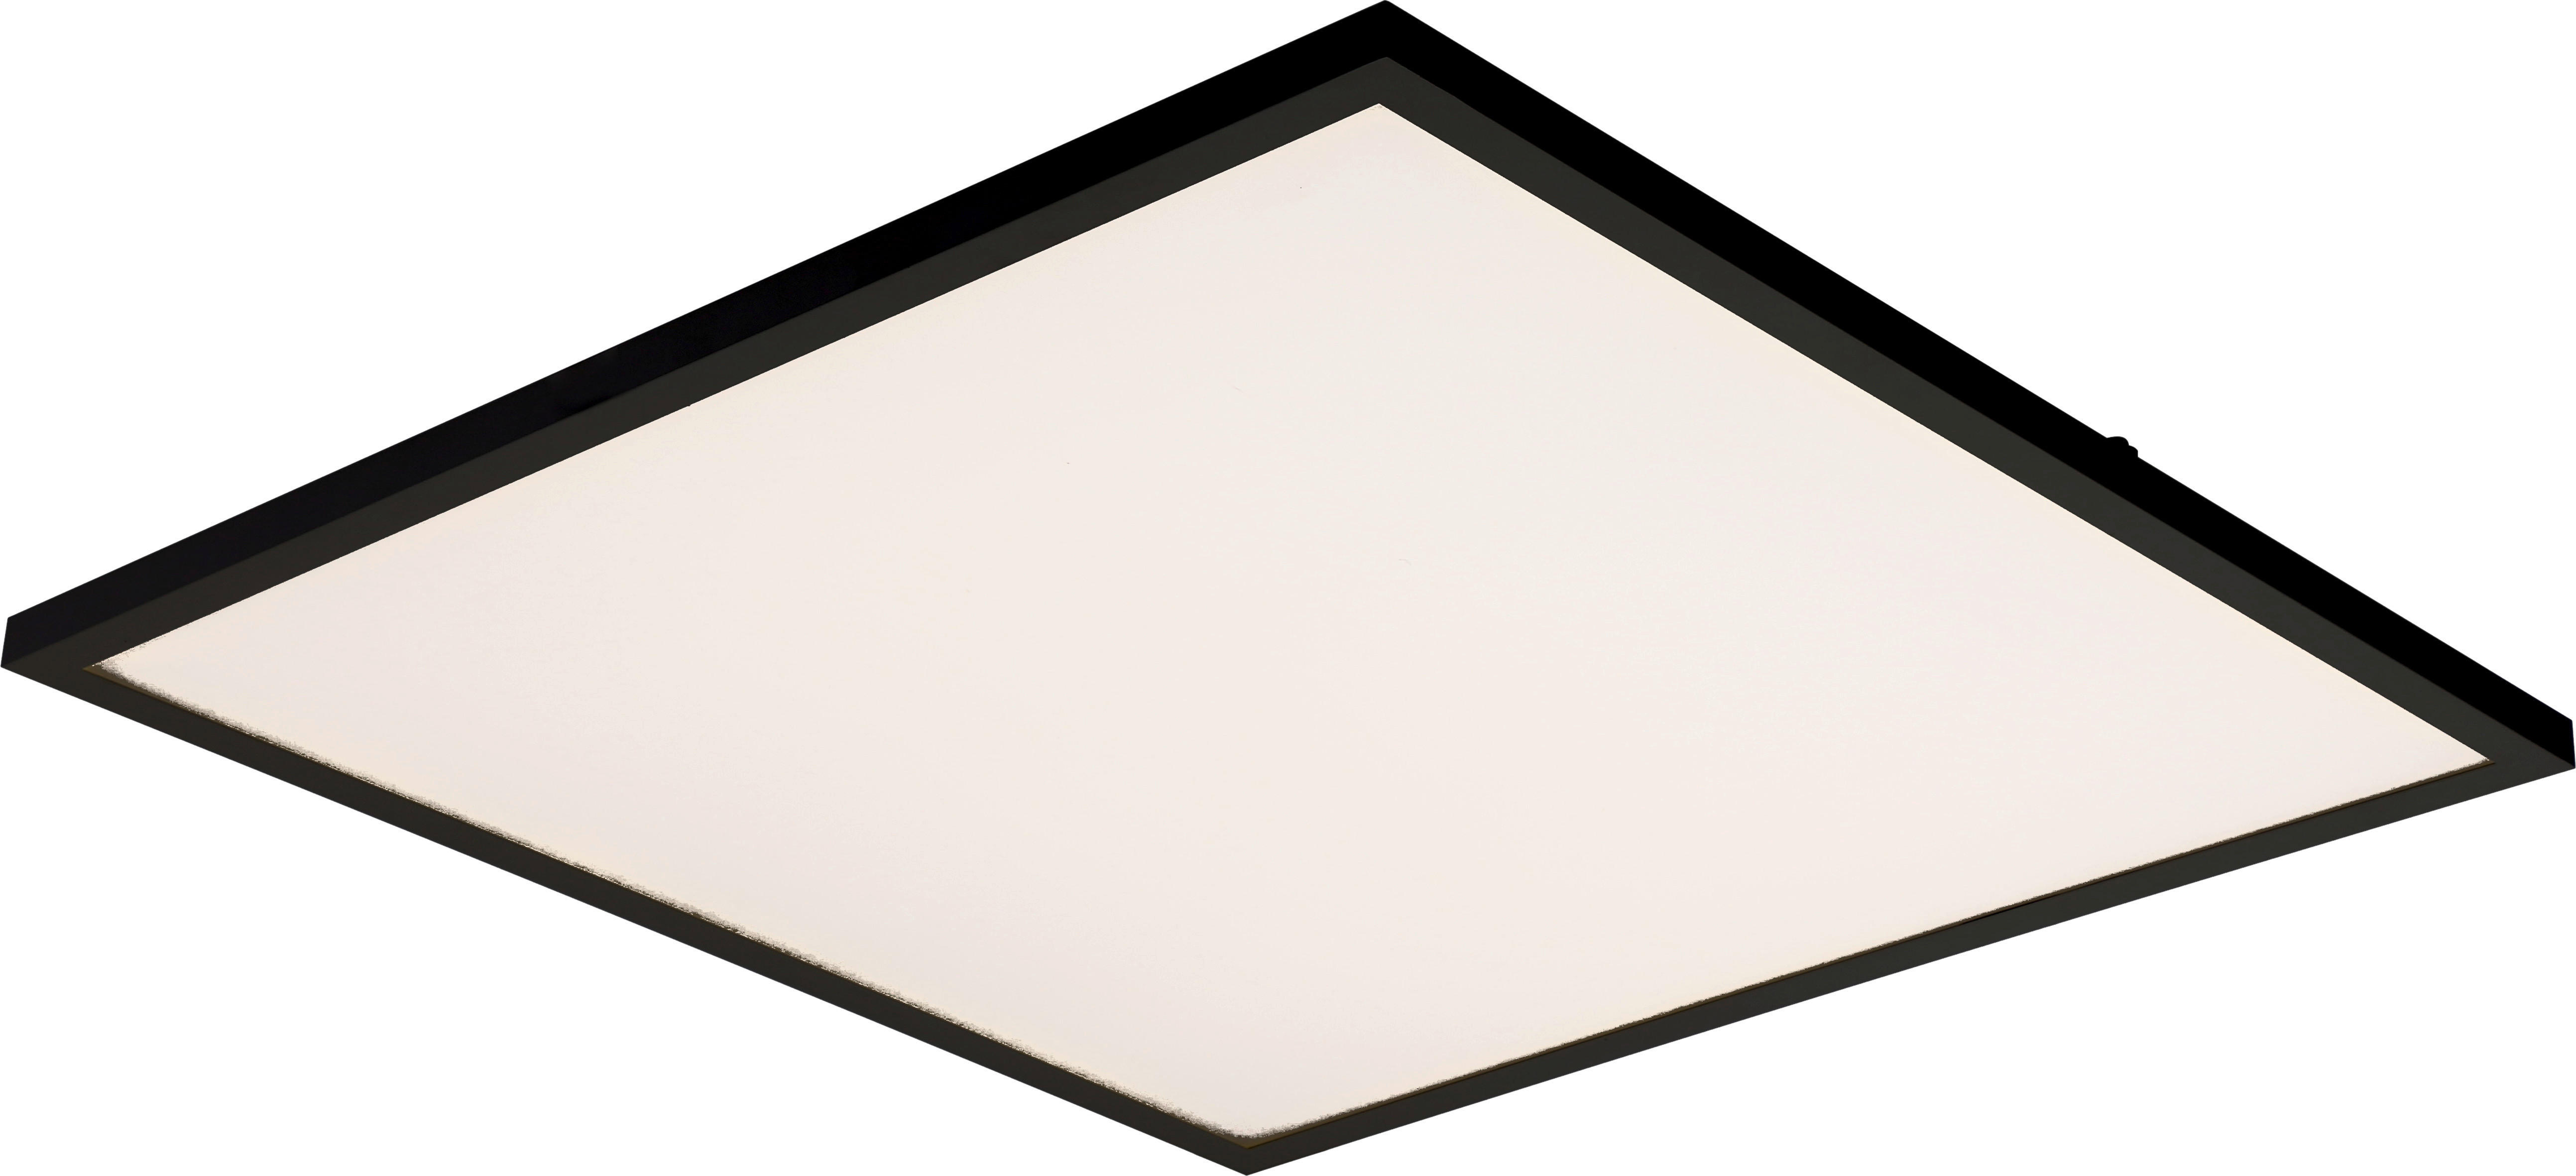 LED PANEL, 45/45/4,5 cm - čierna/biela, Basics, kov/plast (45/45/4,5cm) - Novel